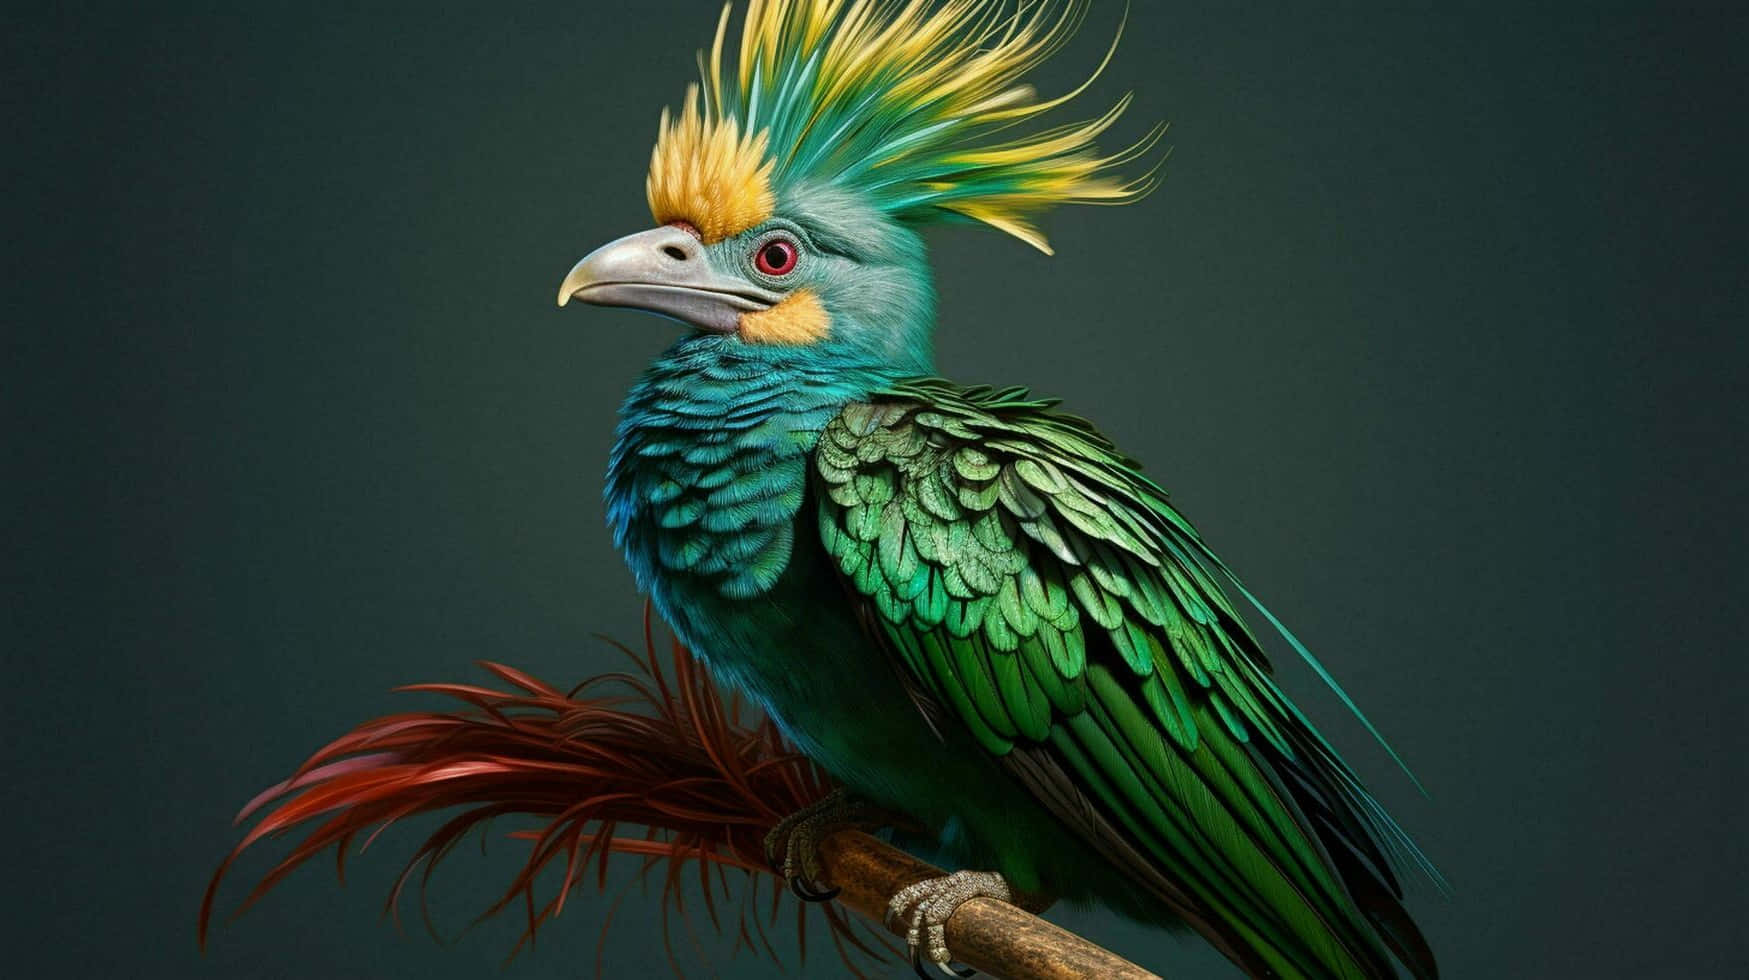 Vibrant Quetzal Portrait Wallpaper